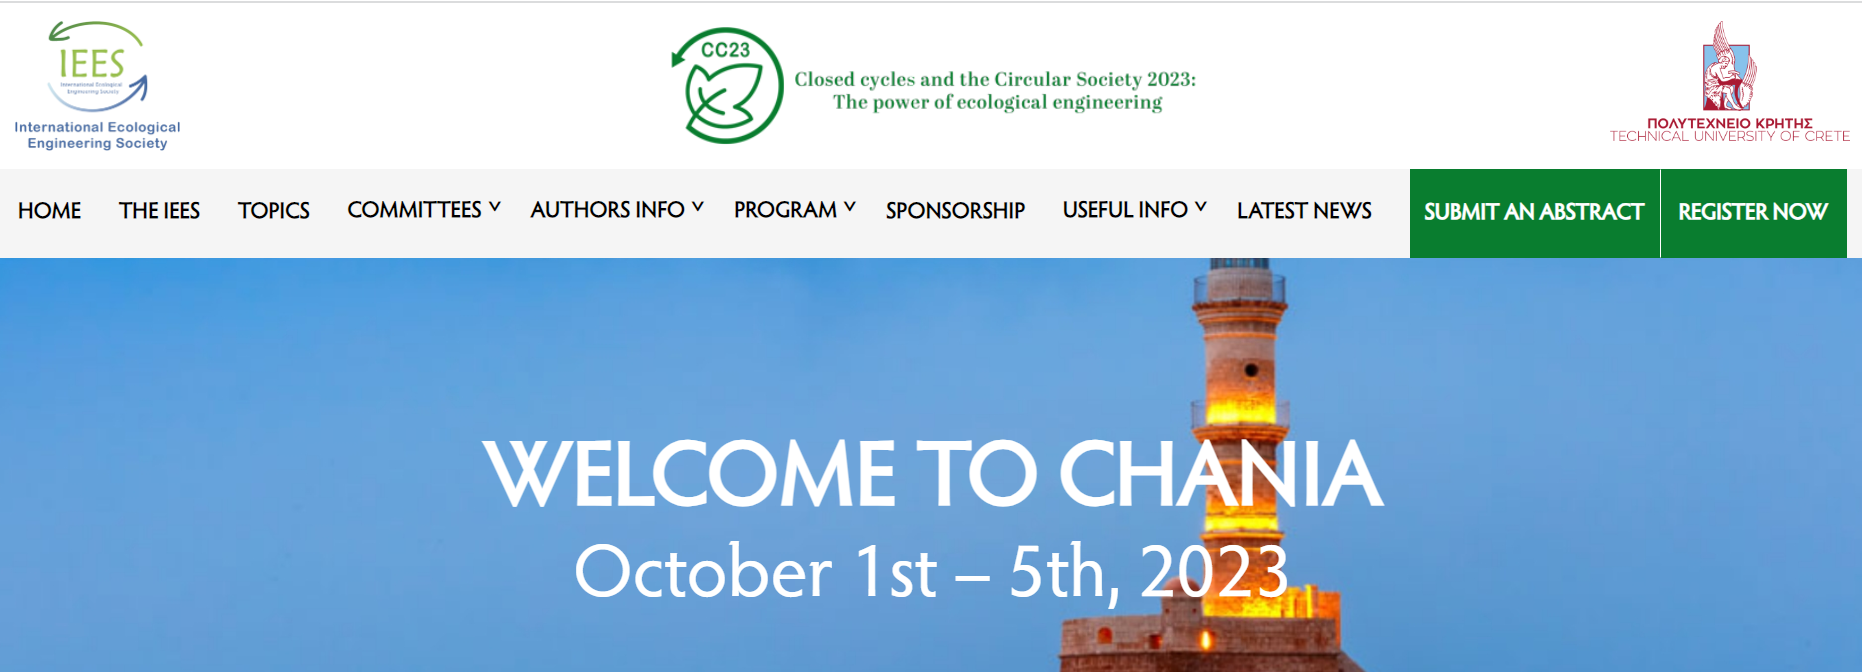 Conferência CC&CS 2023, Chania, Grécia